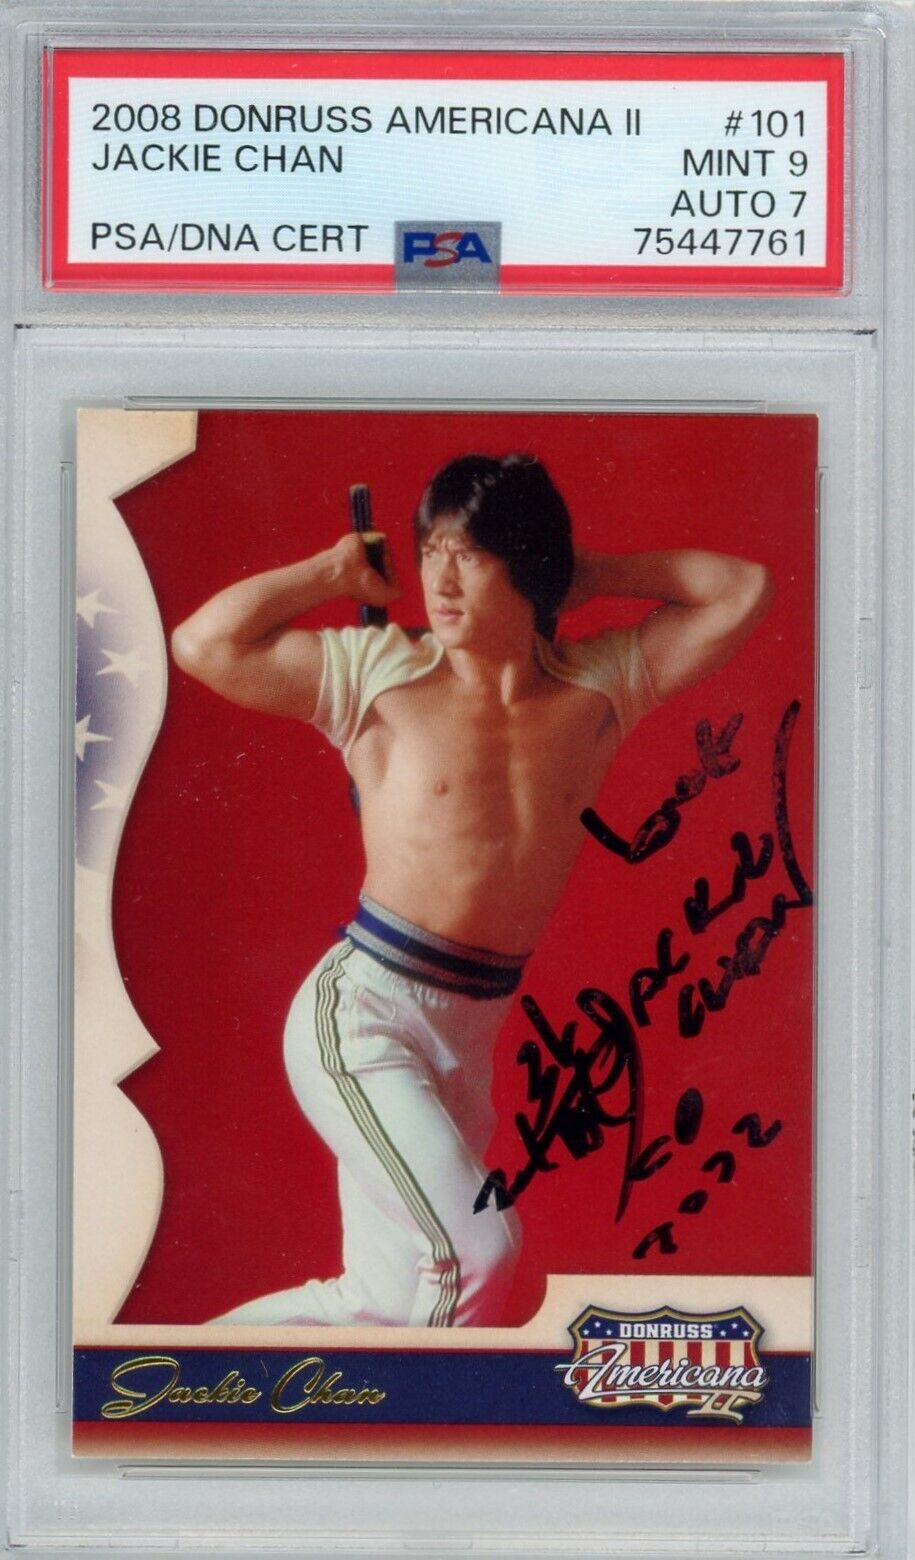 Jackie Chan 2008 Donruss Americana II #101 Rookie Card Autograph PSA 9 Auto 7